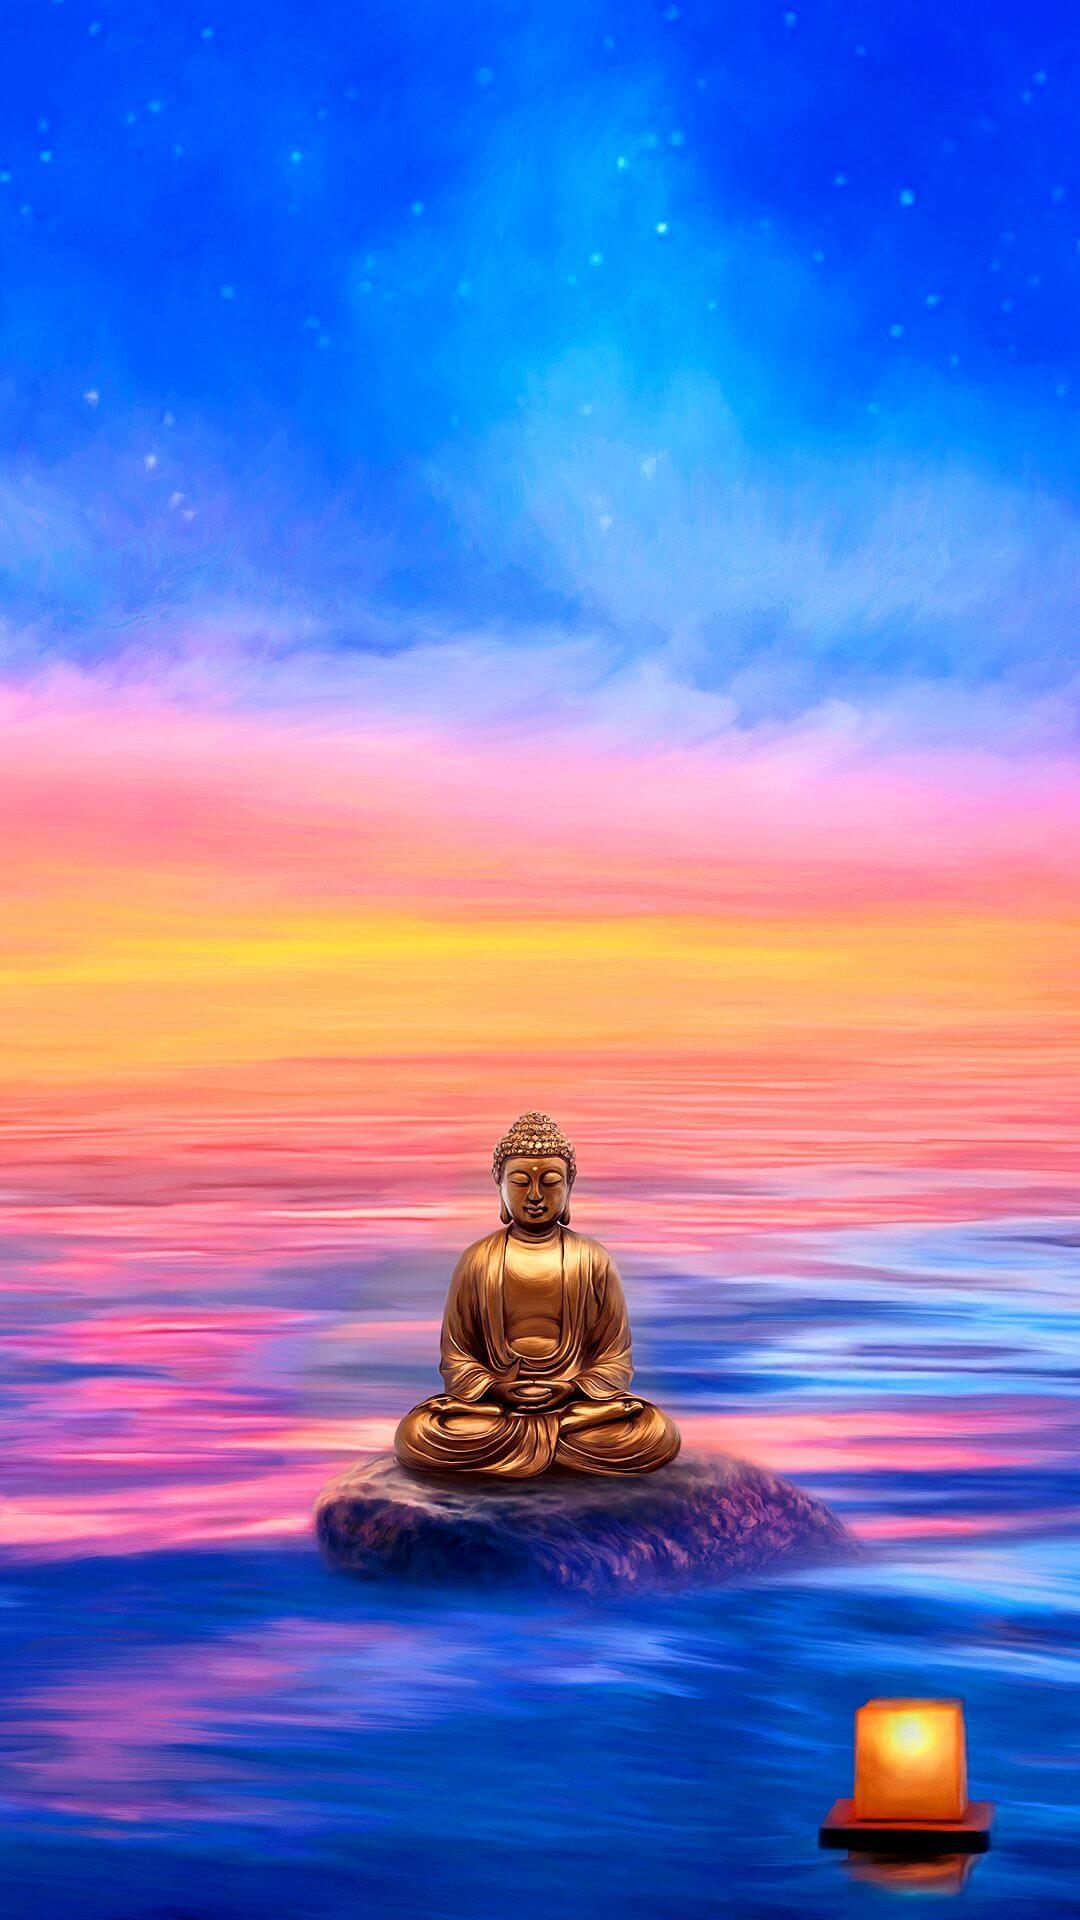 Phật Đẹp: Hãy chiêm ngưỡng hình ảnh Phật Đẹp tràn đầy sự say mê và thanh tịnh. Khung cảnh huyền bí và tôn nghiêm này chắc chắn sẽ đưa bạn tới những khoảnh khắc tĩnh lặng và giúp bạn tìm thấy sự yên bình trong tâm hồn mình.